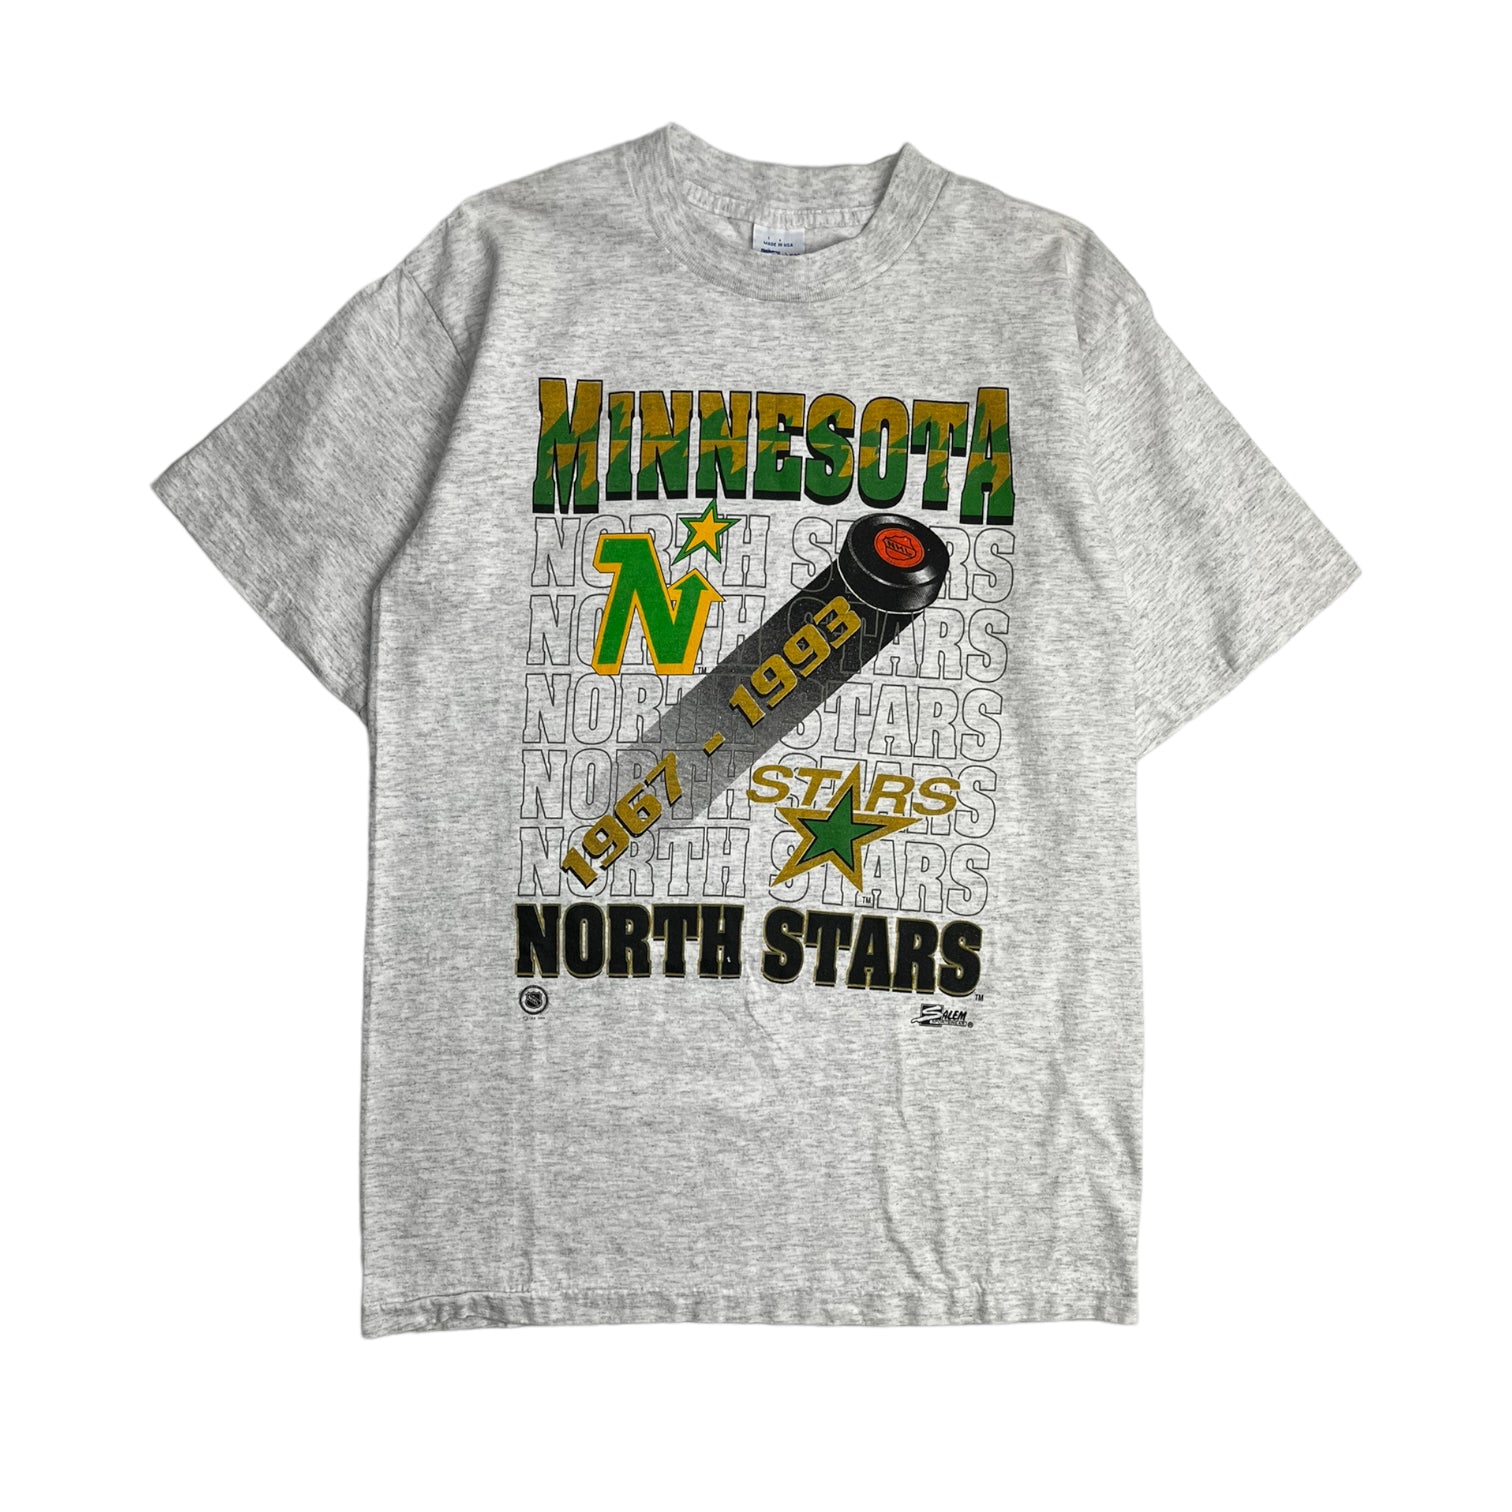 1993 Minnesota North Stars T-Shirt